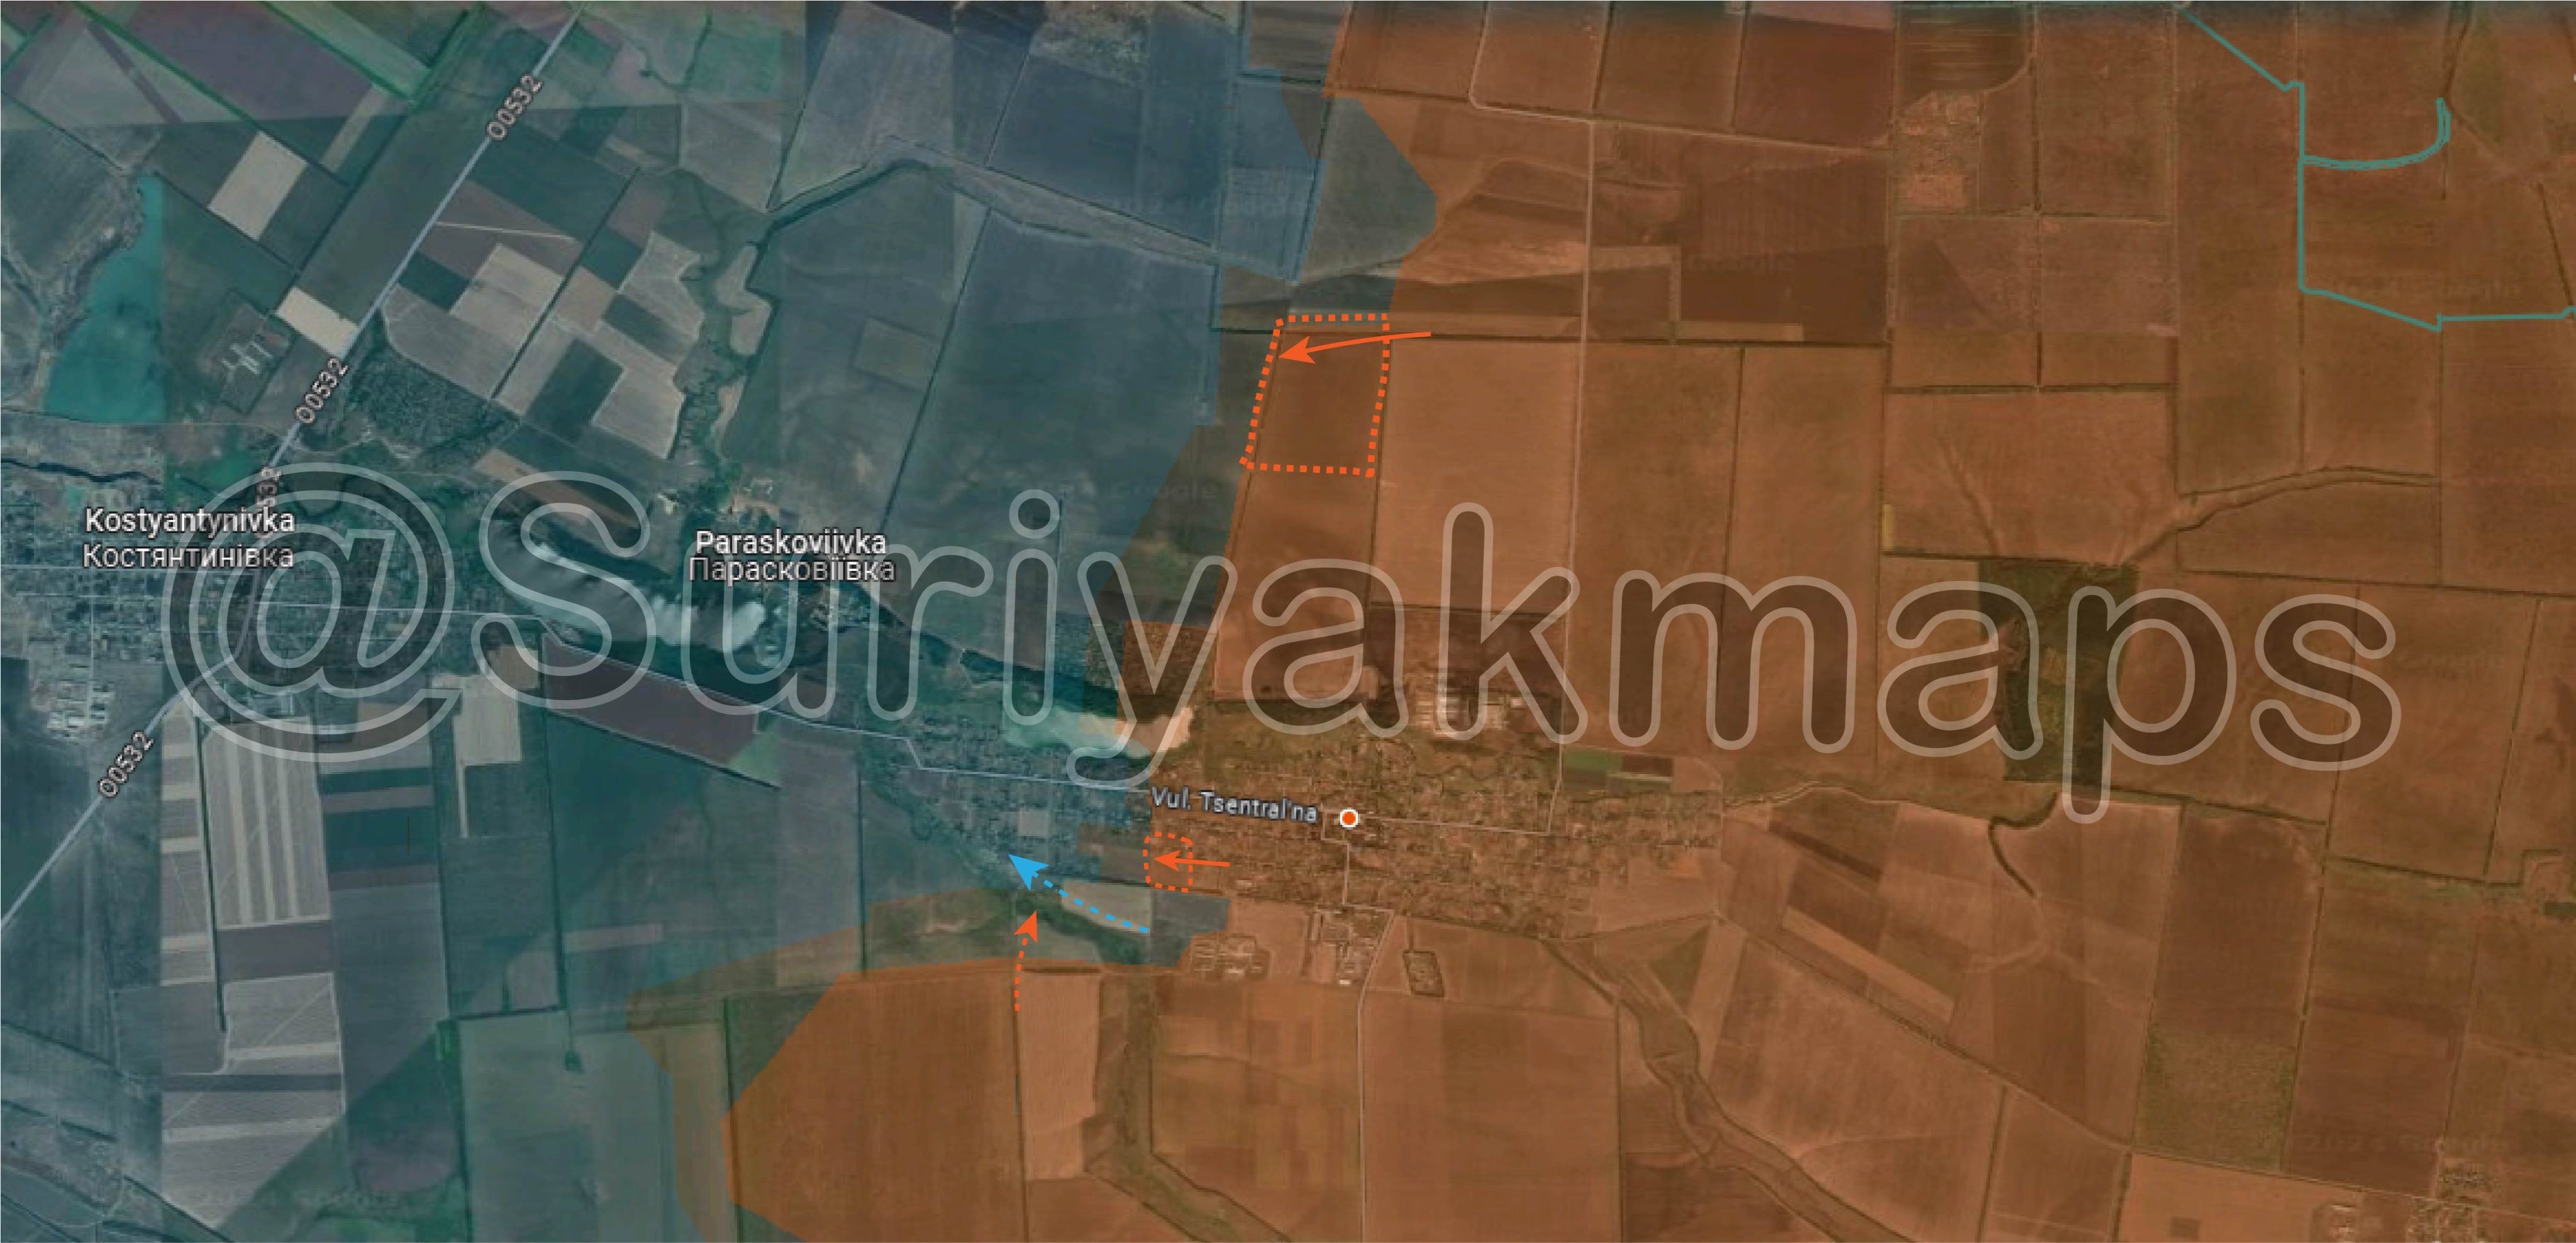 View - Chiến sự Ukraine 15/4: Nga chiếm thêm một thành trì, tiến vào Chasov Yar | Báo Dân trí